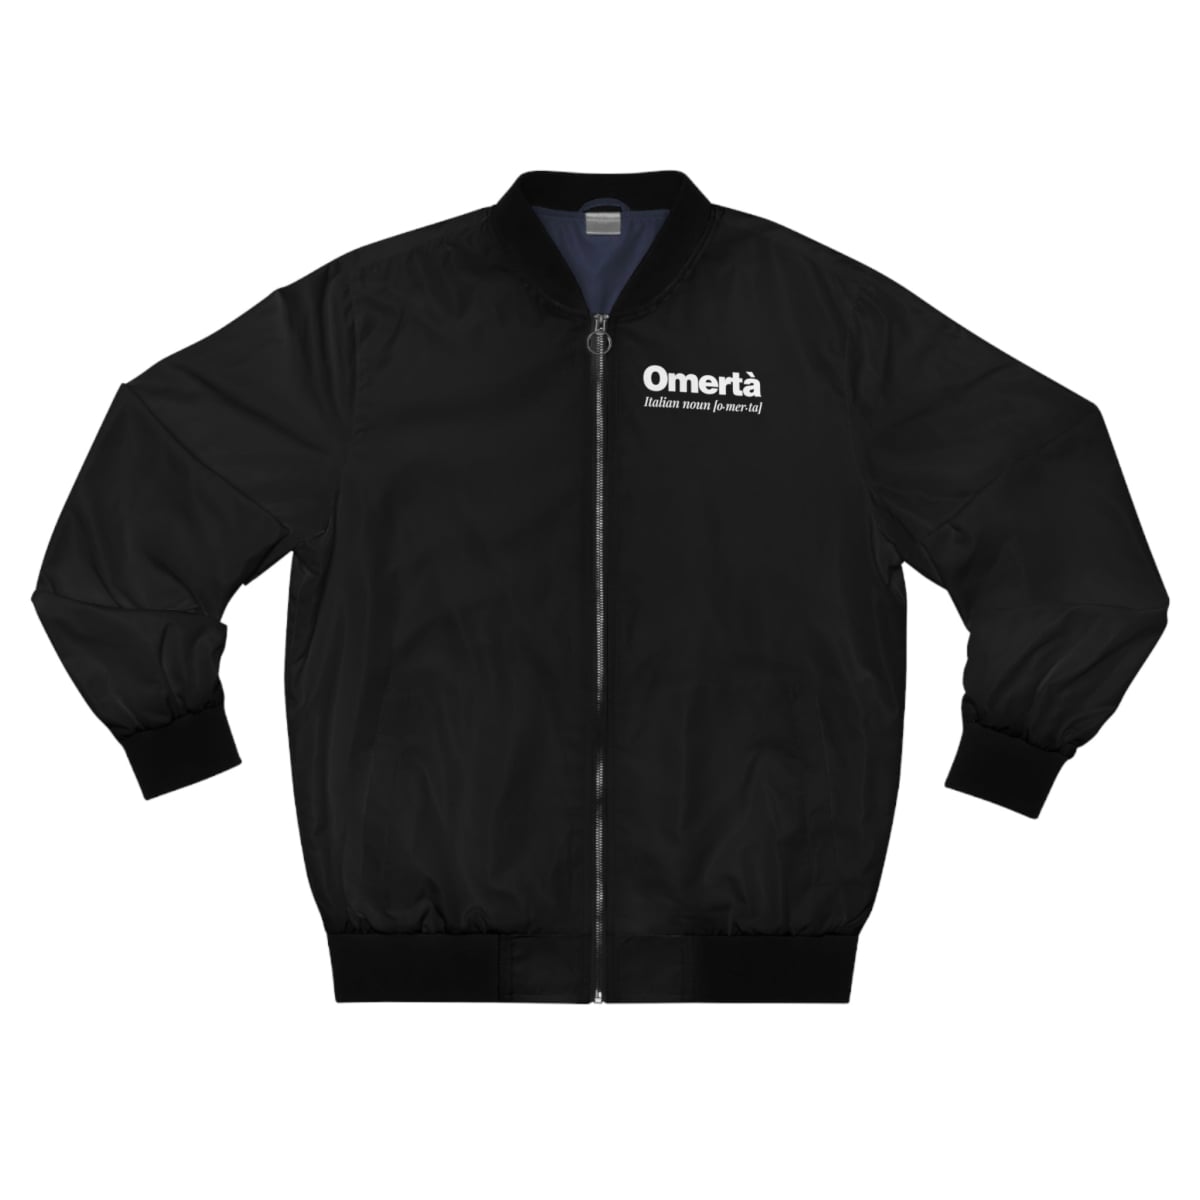 Omerta Meaning Italian Noun Bomber Jacket